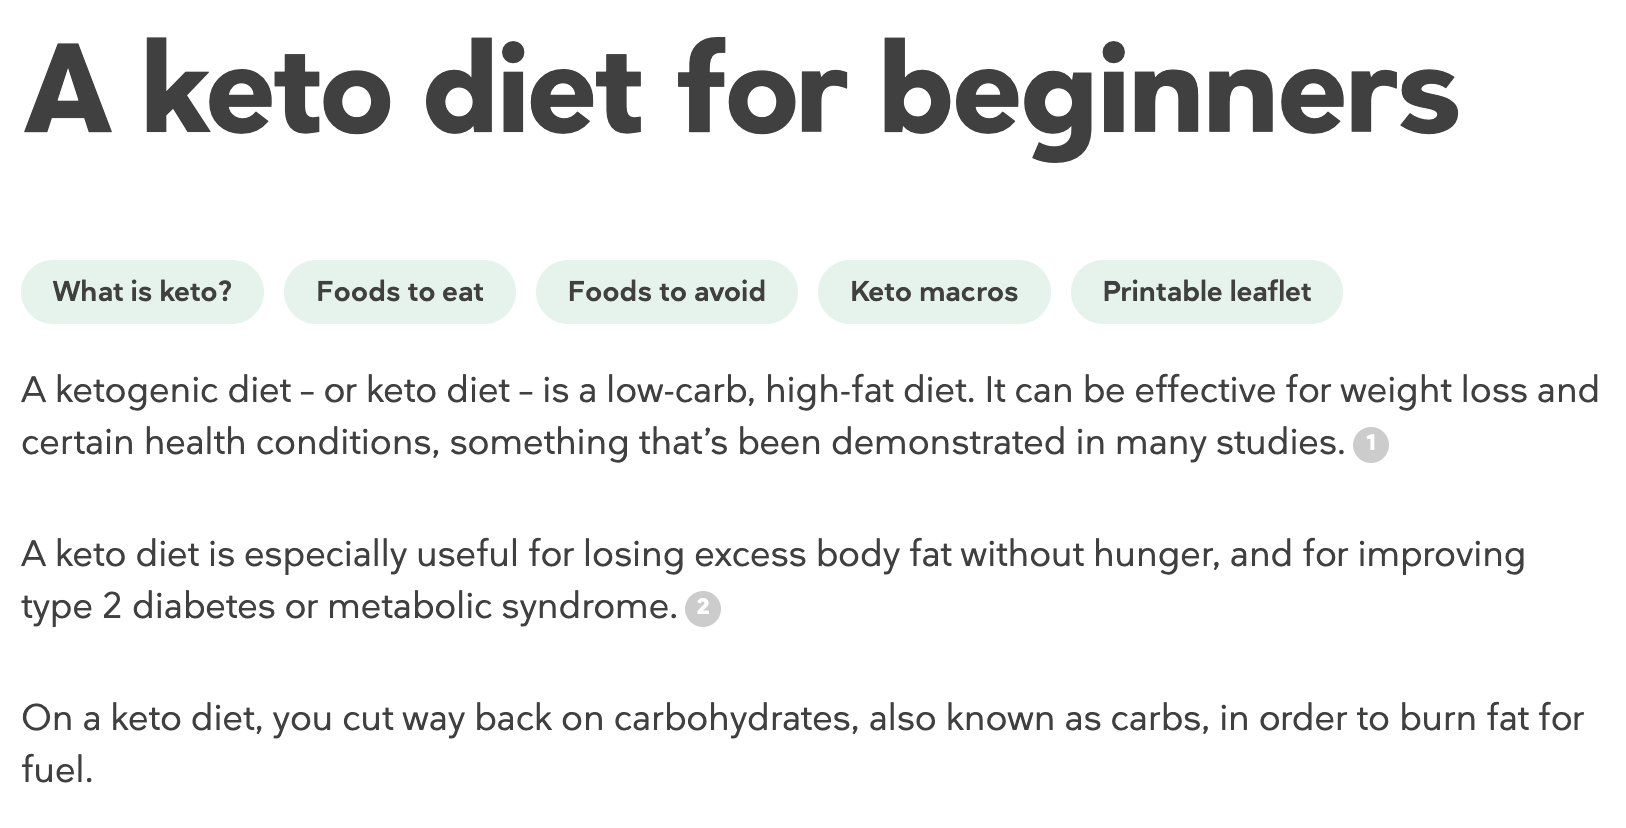 Doctor Diet'in ketojenik diyet rehberinden bir alıntı